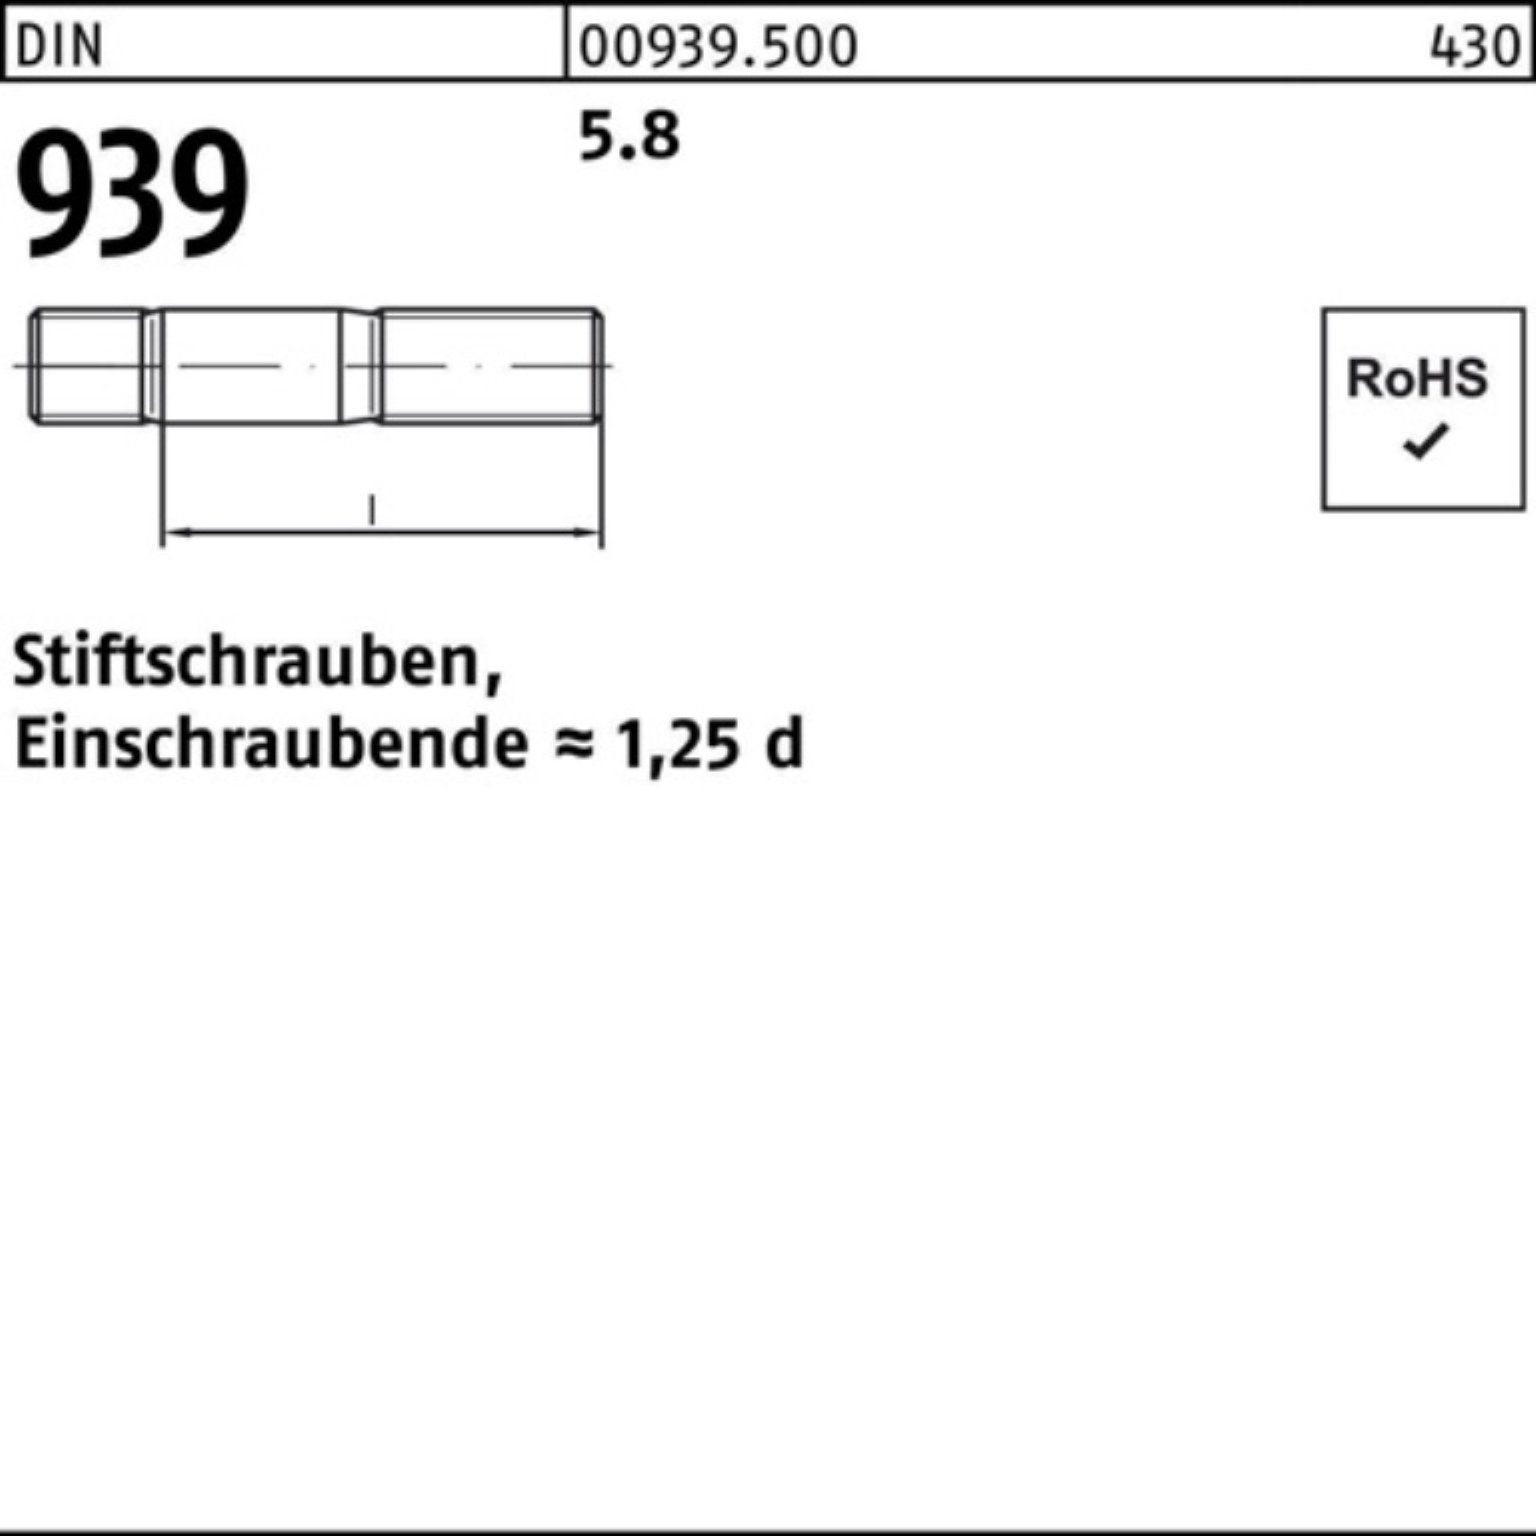 M24x 70 Einschraubende=1,25d Stiftschraube S Stiftschraube DIN Reyher 5.8 939 100er 10 Pack